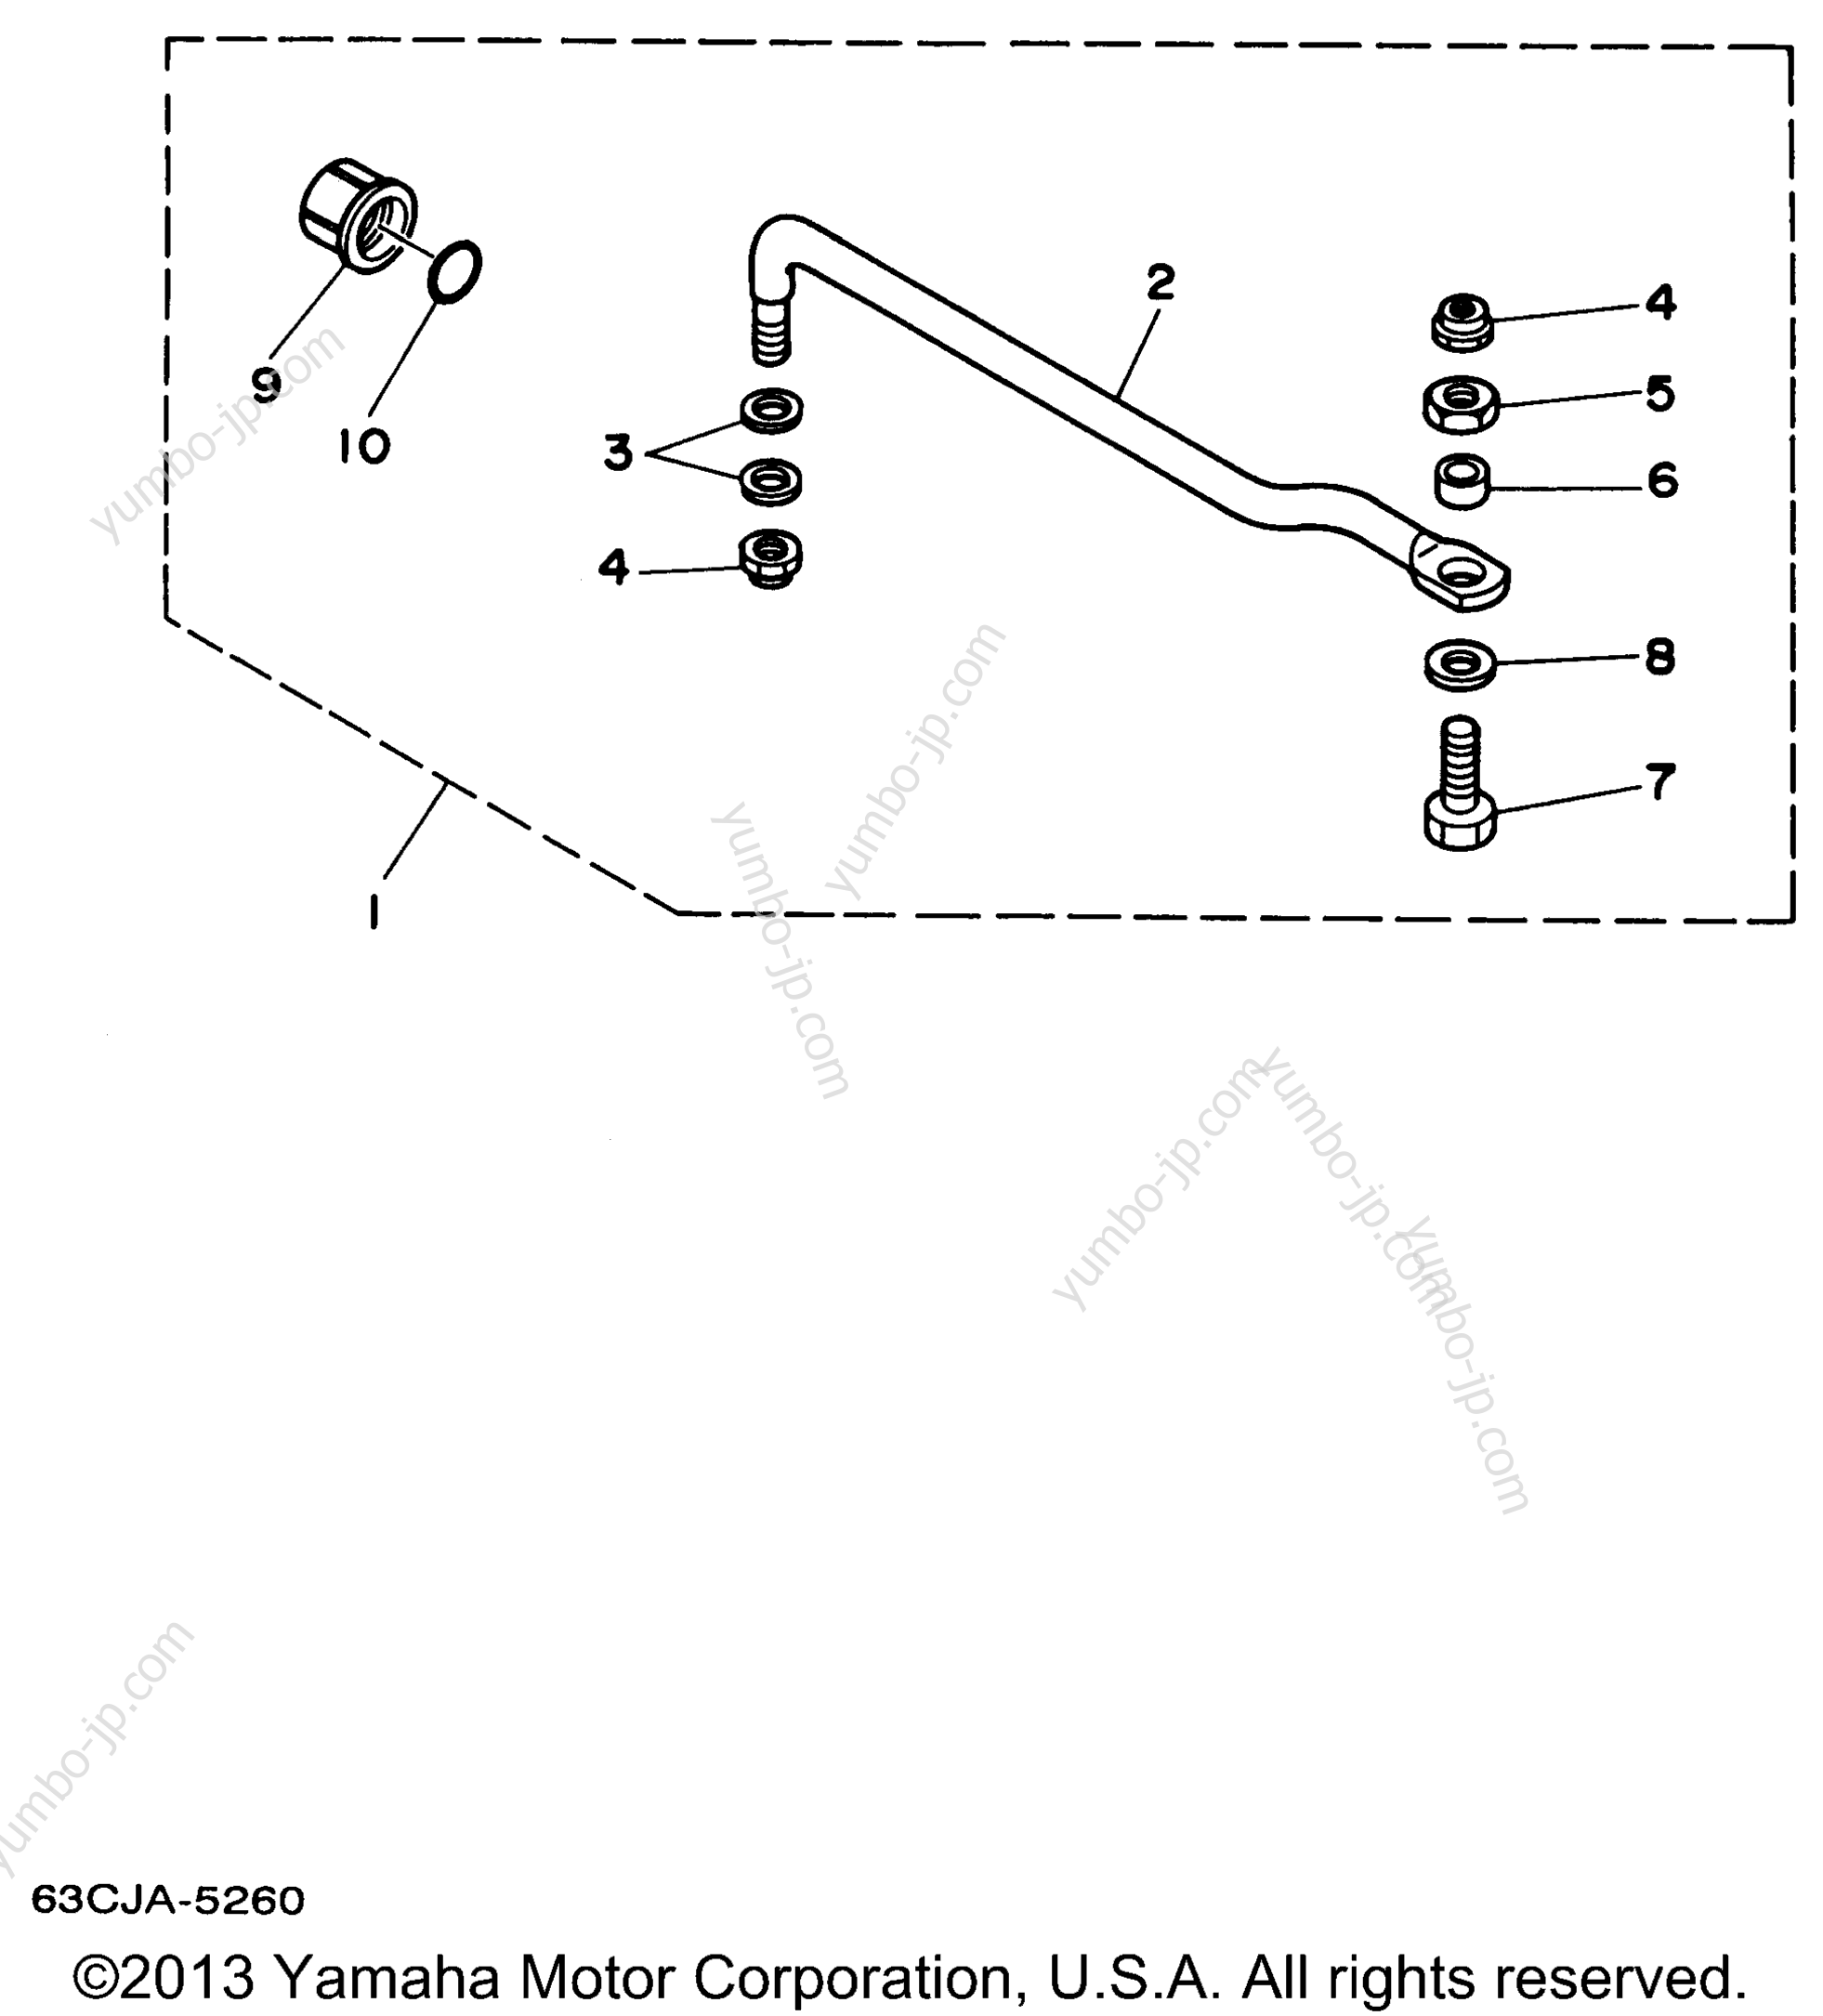 Alternate 1 Steering Guide Attachment для лодочных моторов YAMAHA P40EJRW_THLW (40MSHW) 1998 г.